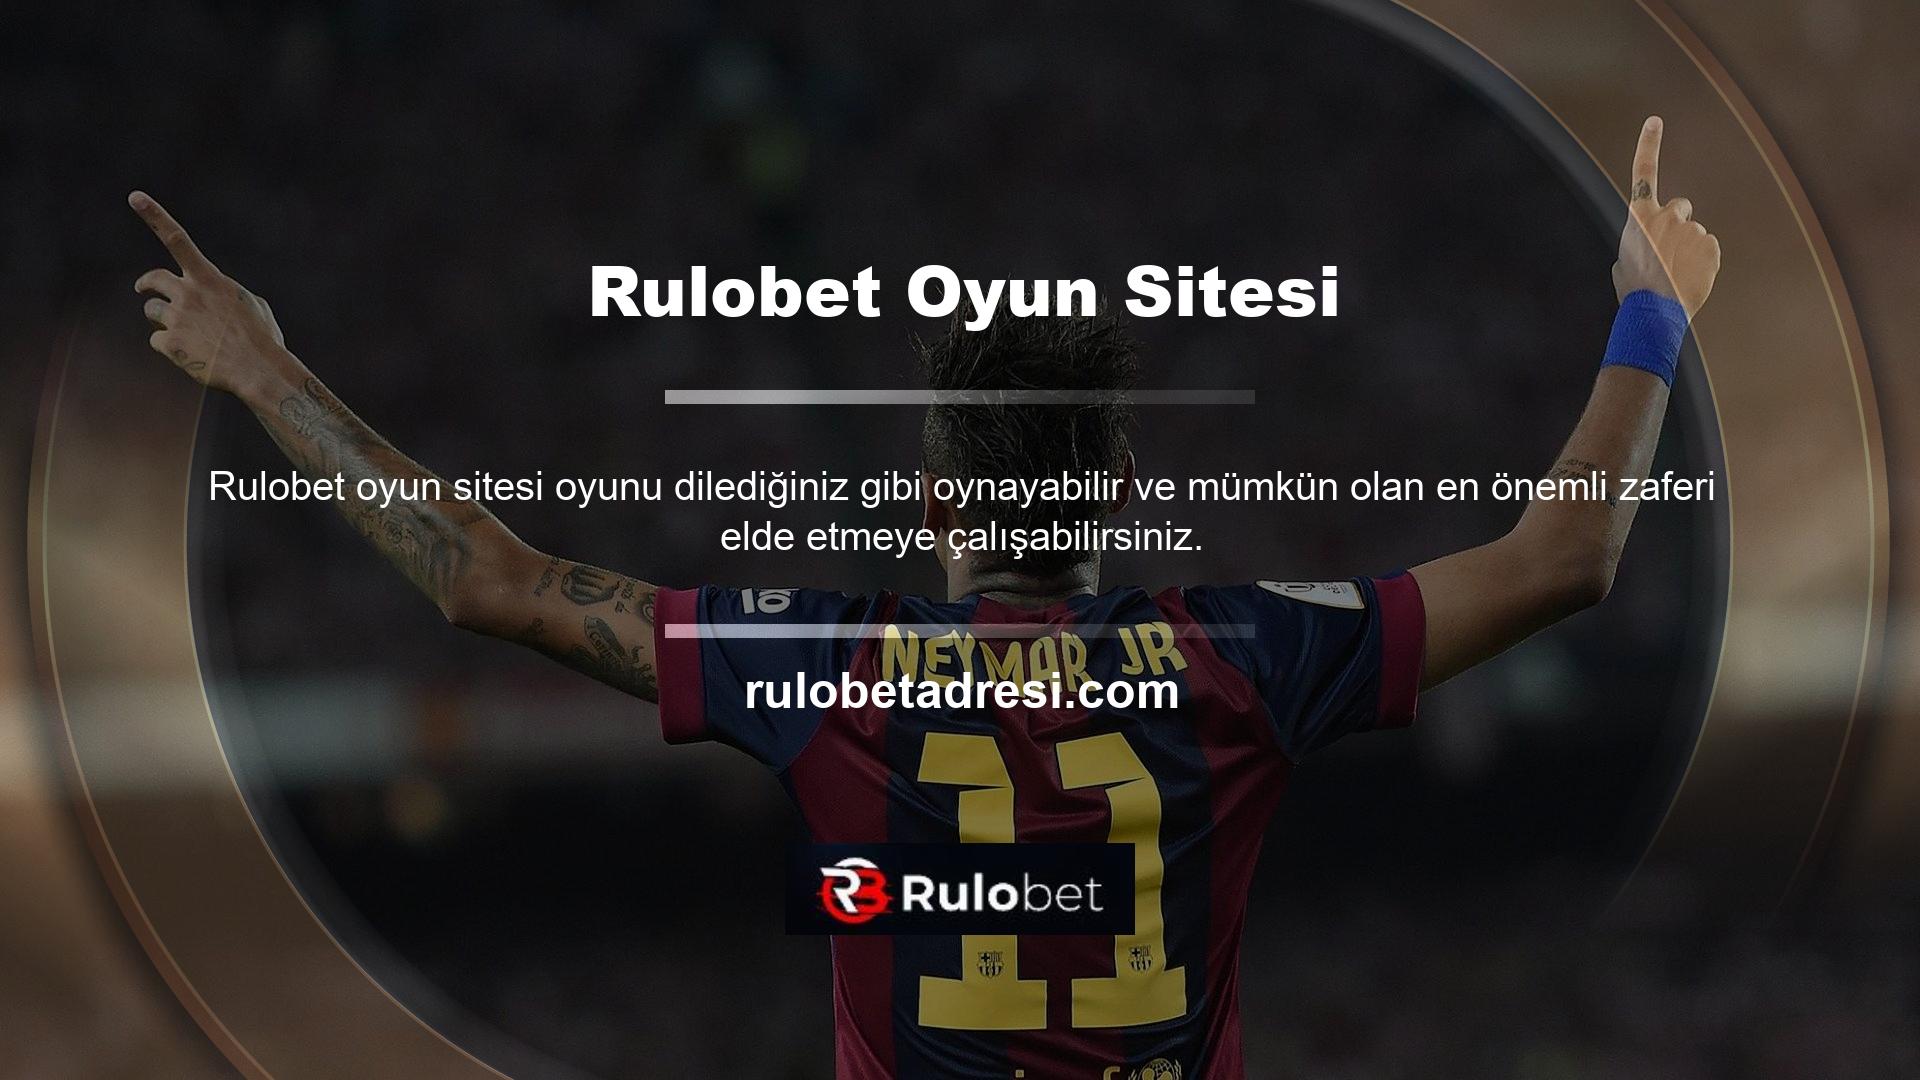 Rulobet, diğerleri gibi şansa dayanan bir web sitesidir